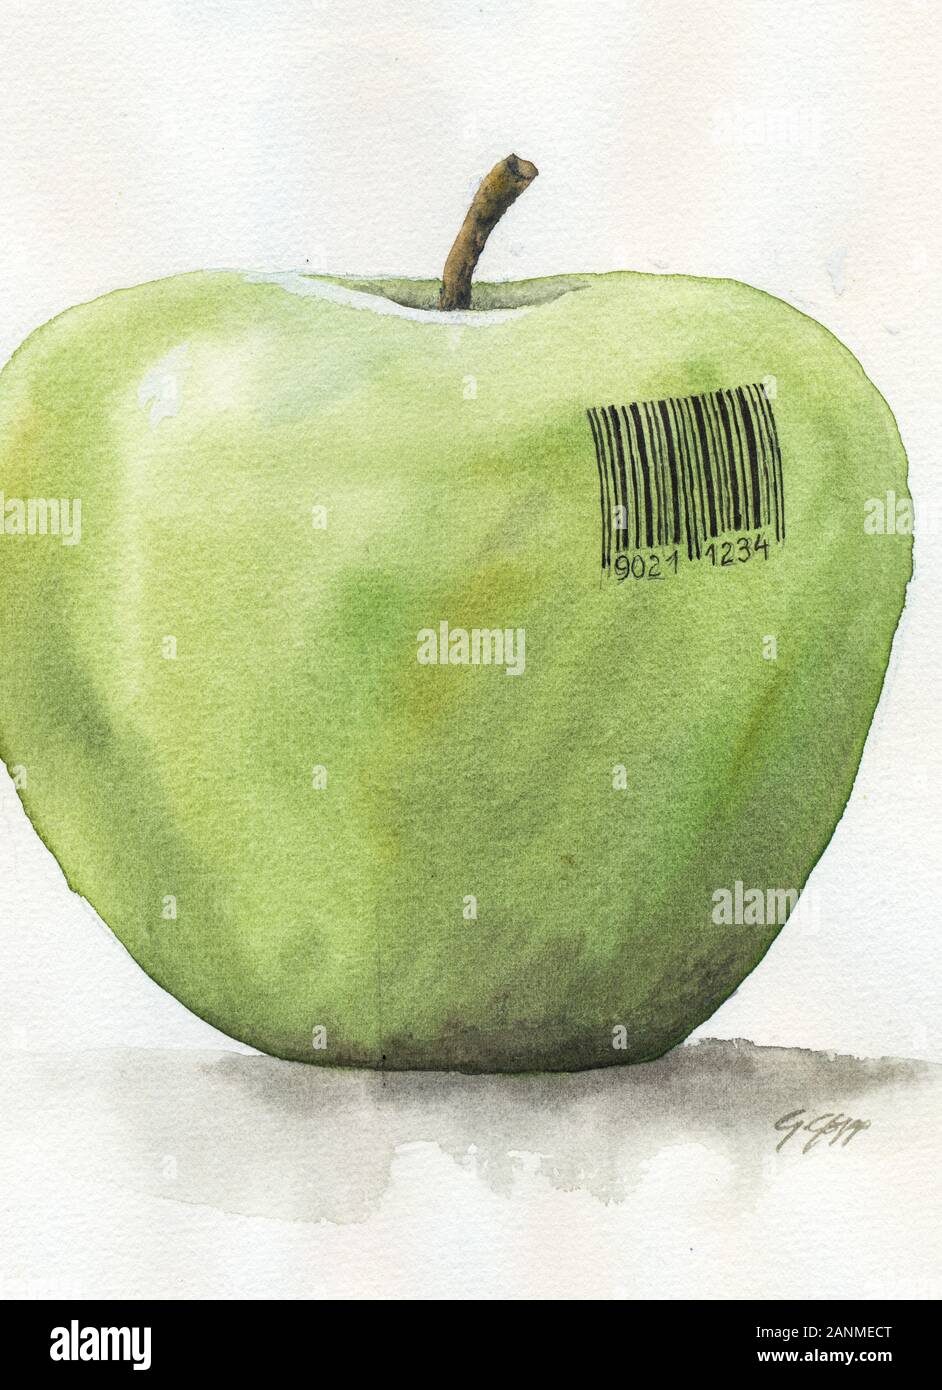 Gentechnik, Apfel, Illustration von Gerhard Gepp - Genetic Engineering Stock Photo